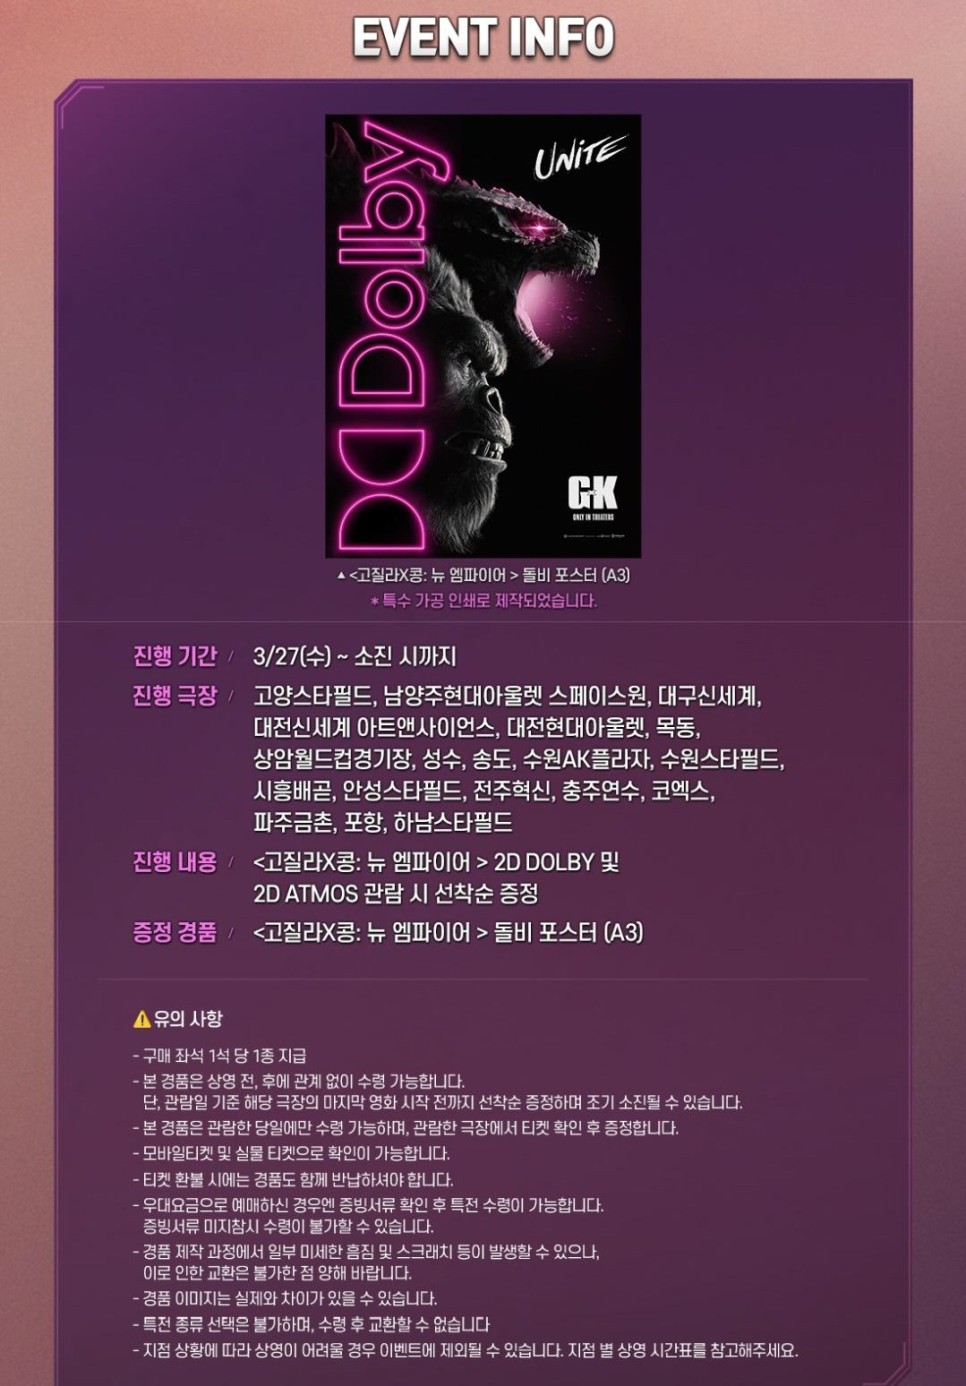 영화 고질라 X 콩 뉴 엠파이어 1주차 특전 정보 CGV TTT 아이맥스 스크린X 4DX 돌비 시네마 포스터 실물